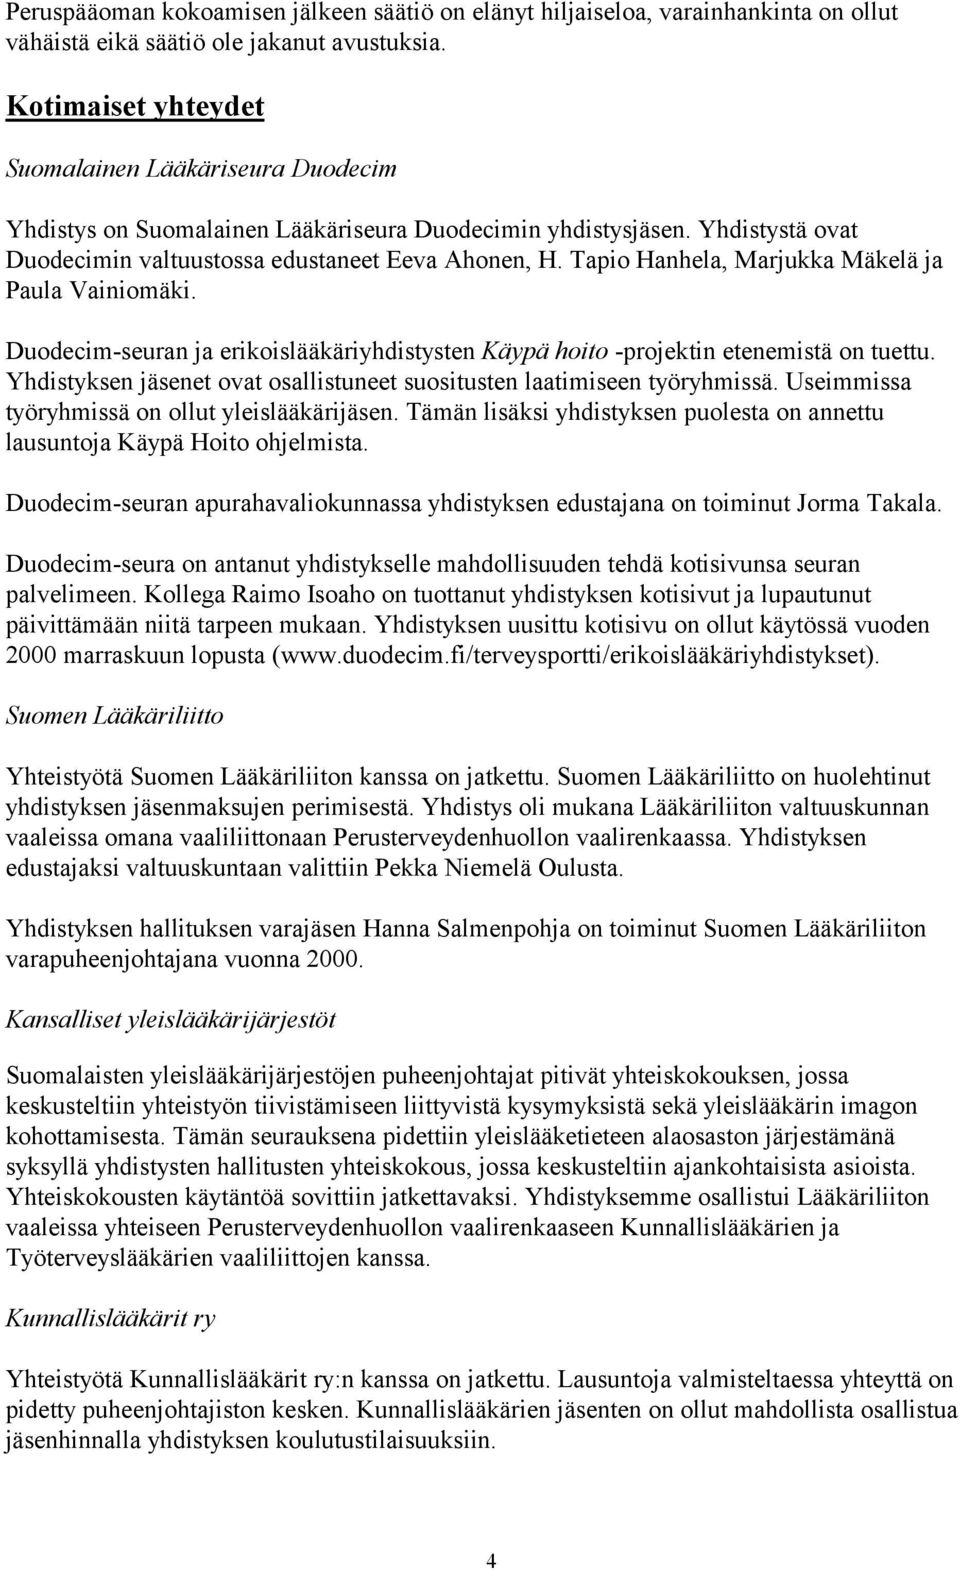 Tapio Hanhela, Marjukka Mäkelä ja Paula Vainiomäki. Duodecim-seuran ja erikoislääkäriyhdistysten Käypä hoito -projektin etenemistä on tuettu.